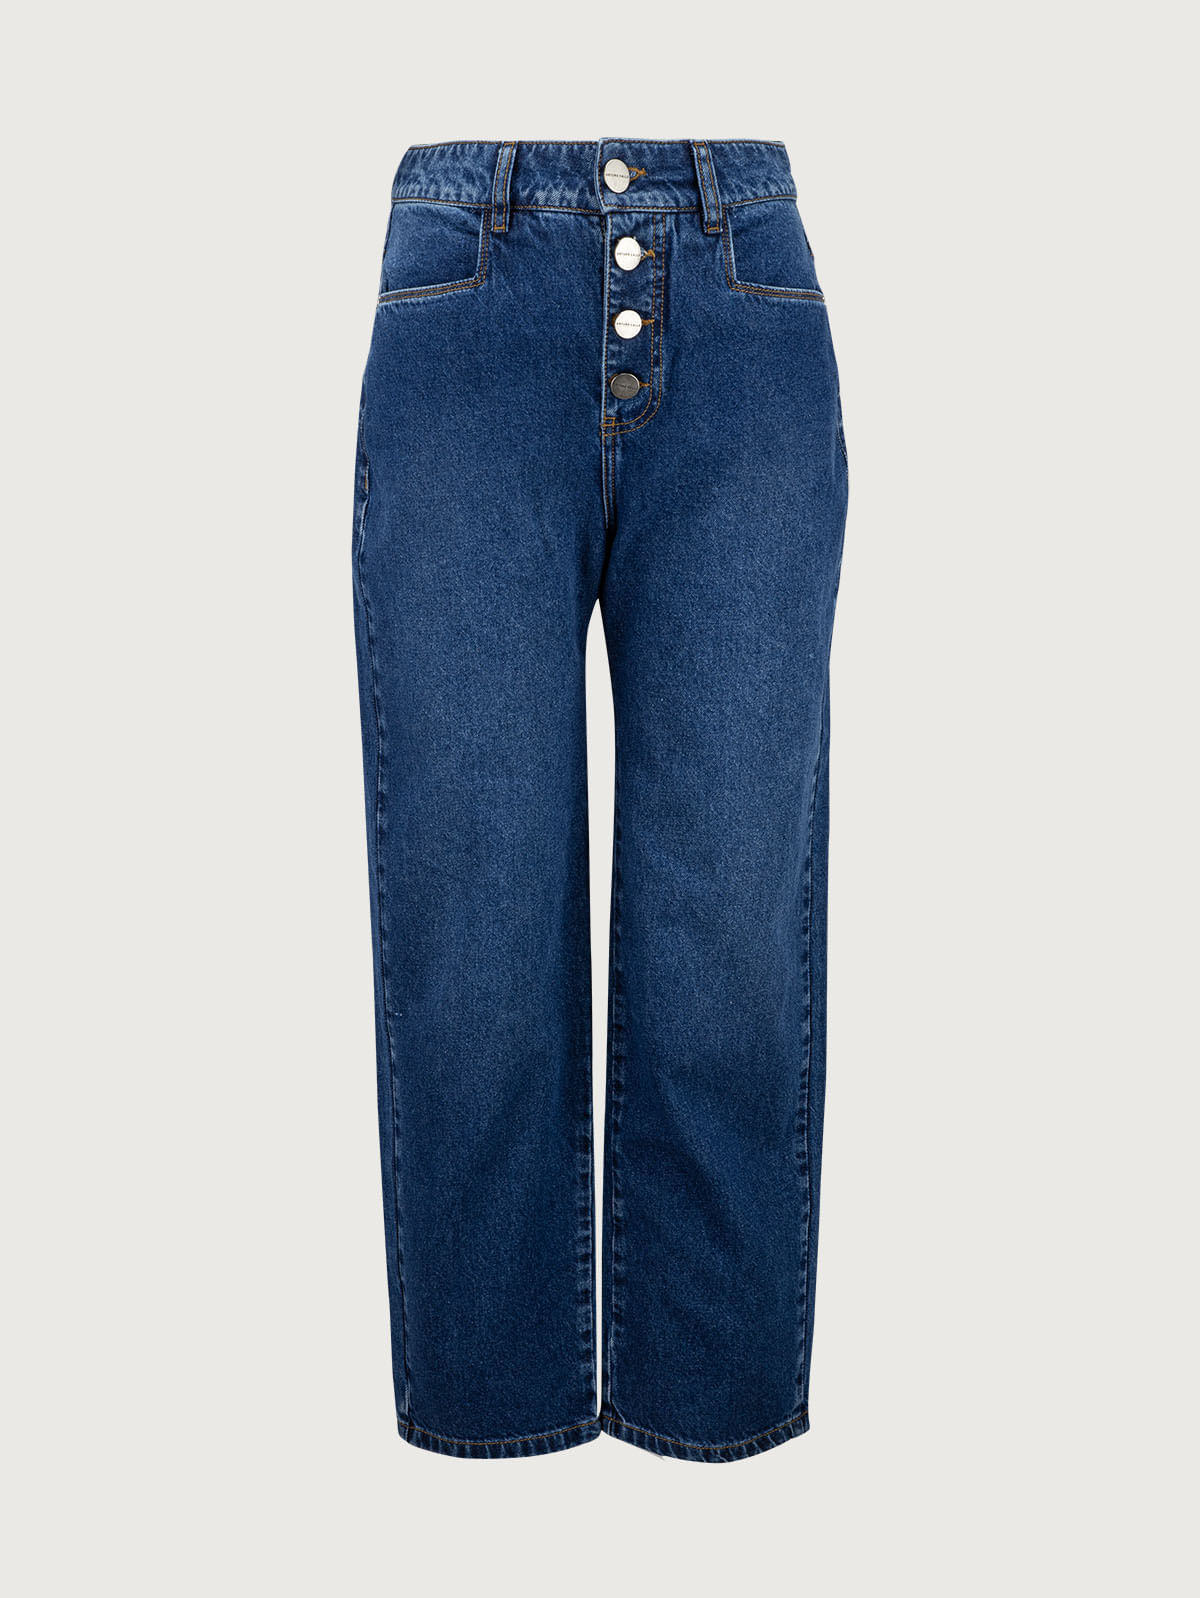 Pantalón vaquero jeans mujer tiro alto elástico - Venca - 114120